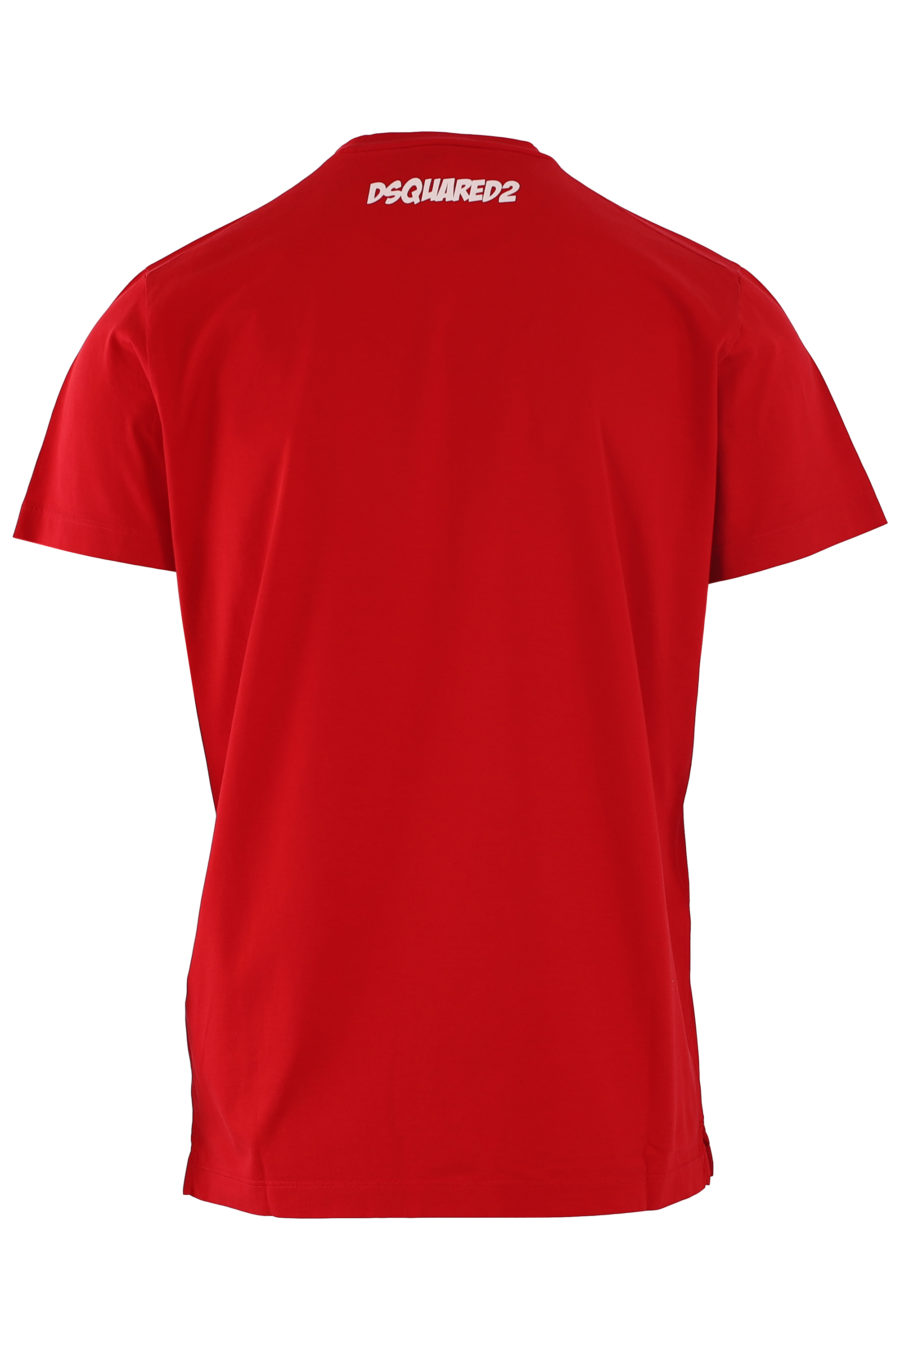 T-shirt rouge "satisfacktion guaranteed2" - IMG 6818